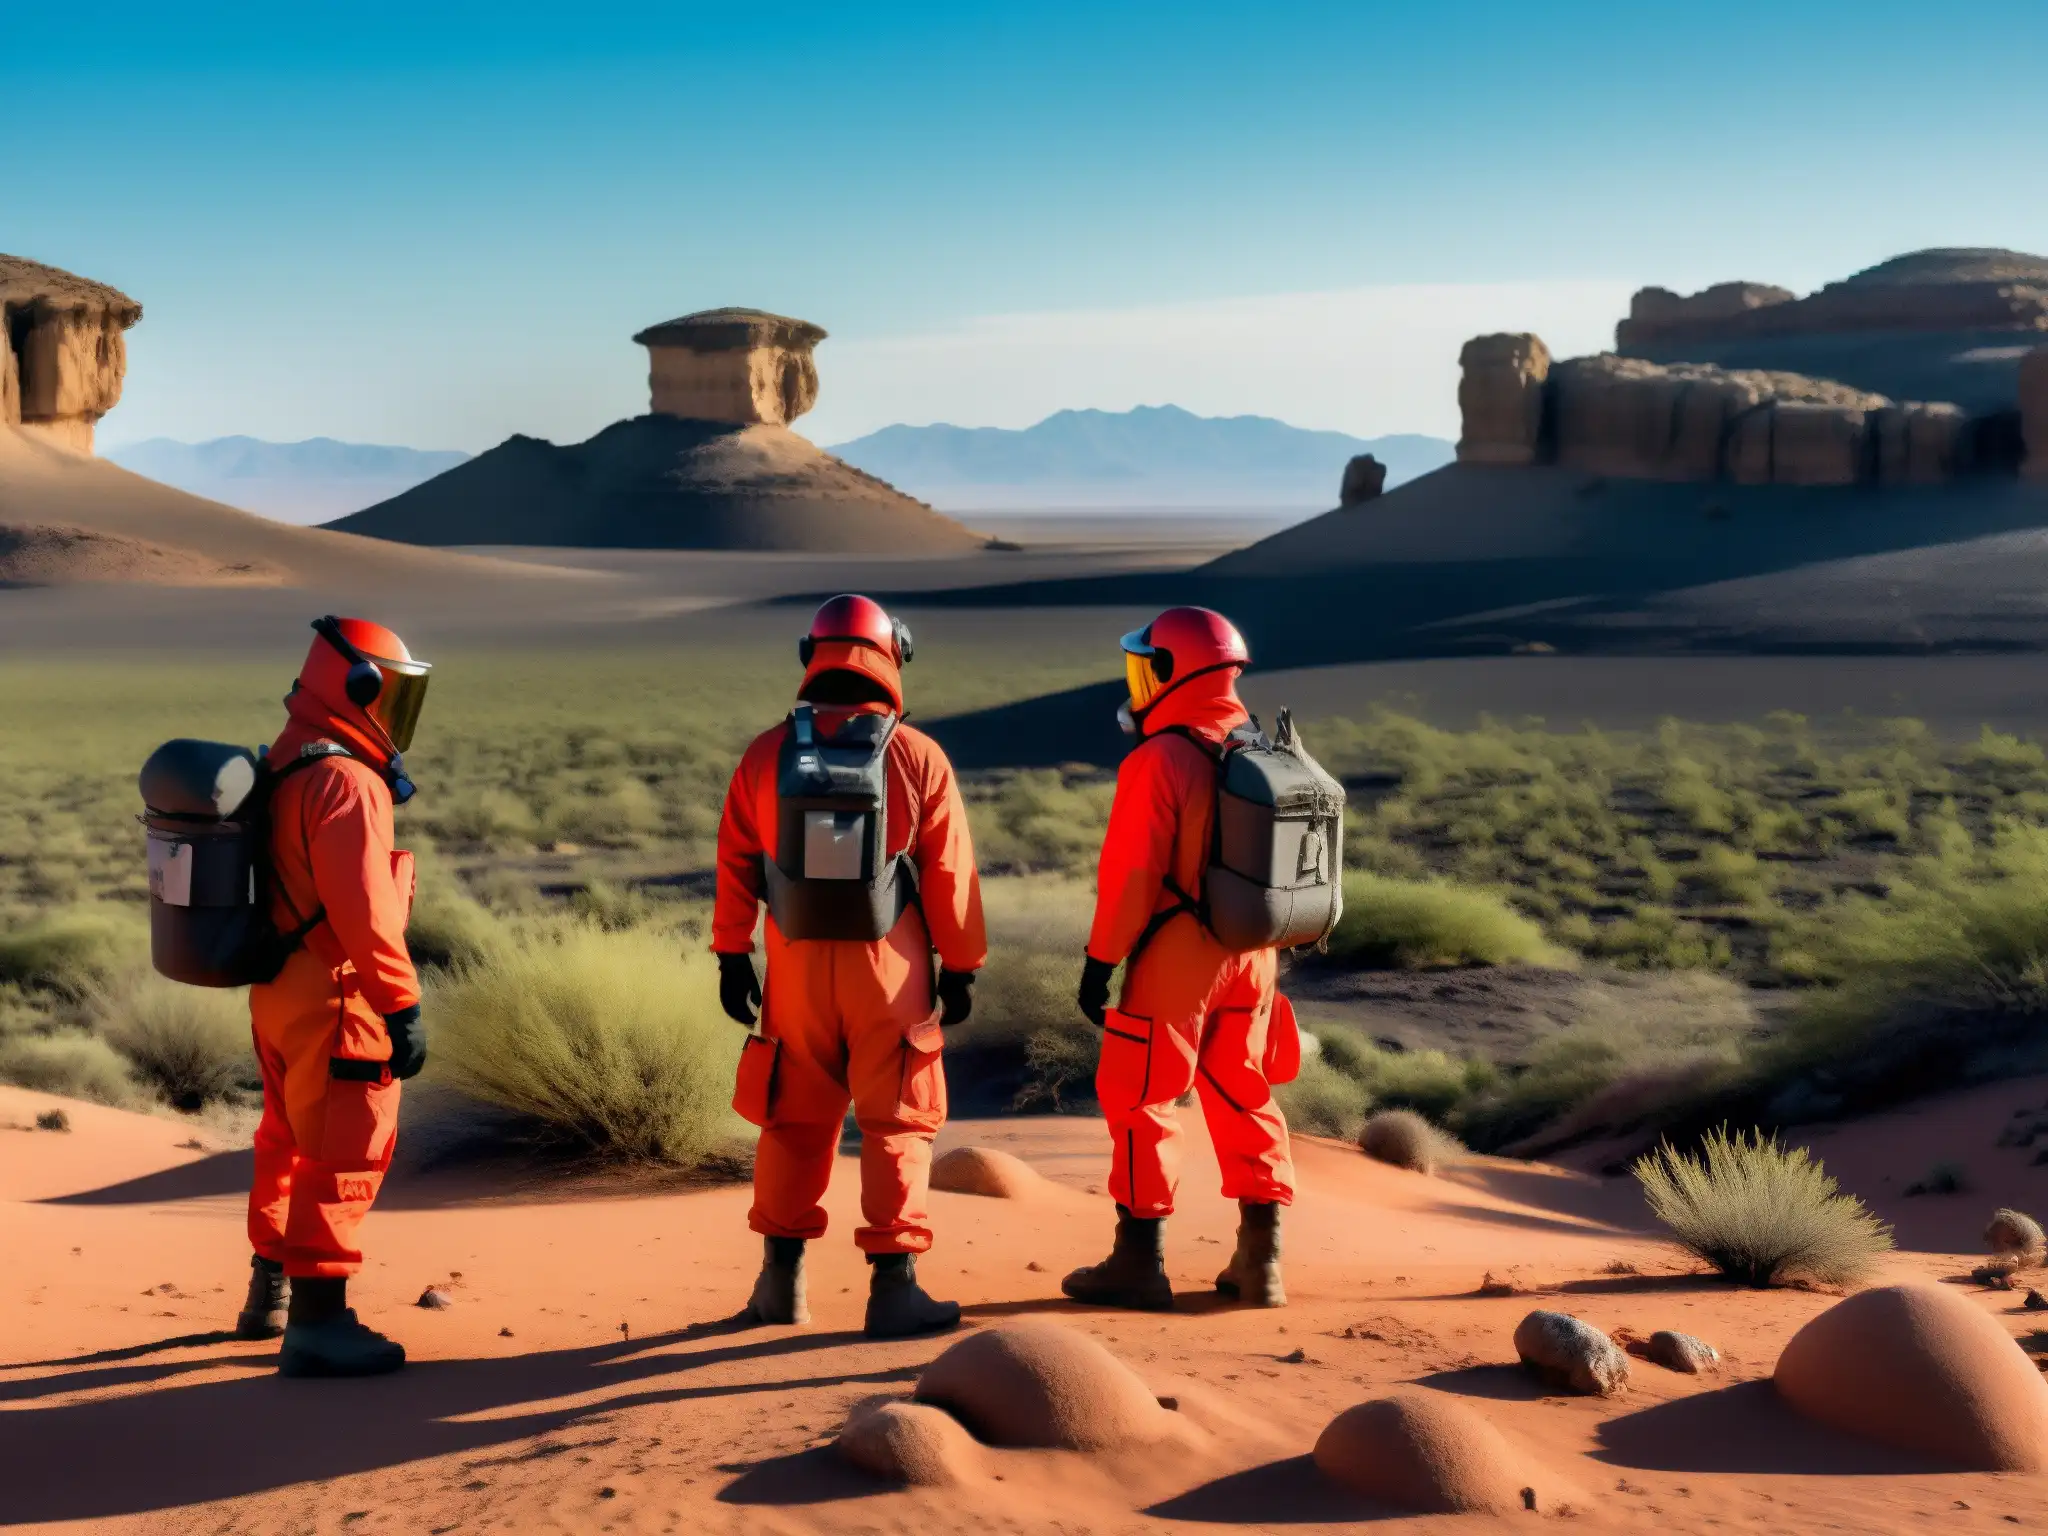 Misterio en la Zona del Silencio en el desierto mexicano: científicos explorando un paisaje extraño y misterioso bajo un cielo rojo intenso